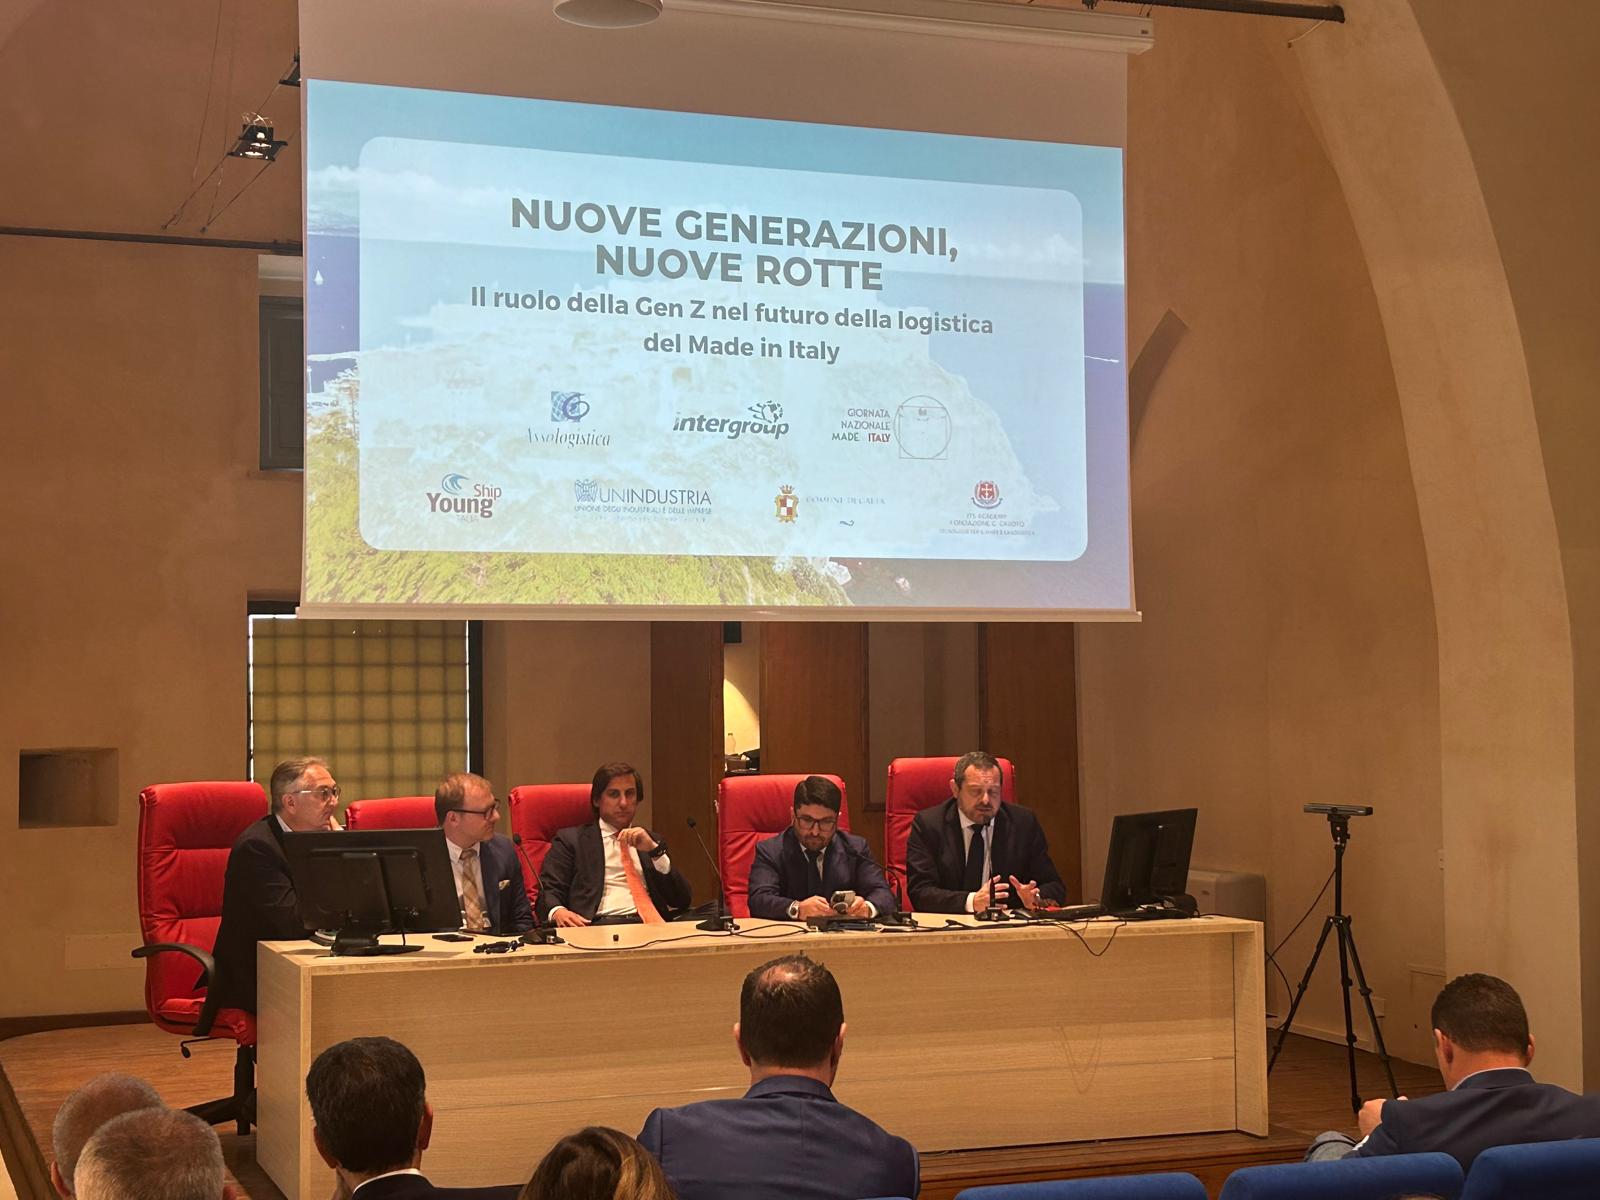 Futuro della logistica del made in Italy: quale ruolo per i giovani della generazione Z?